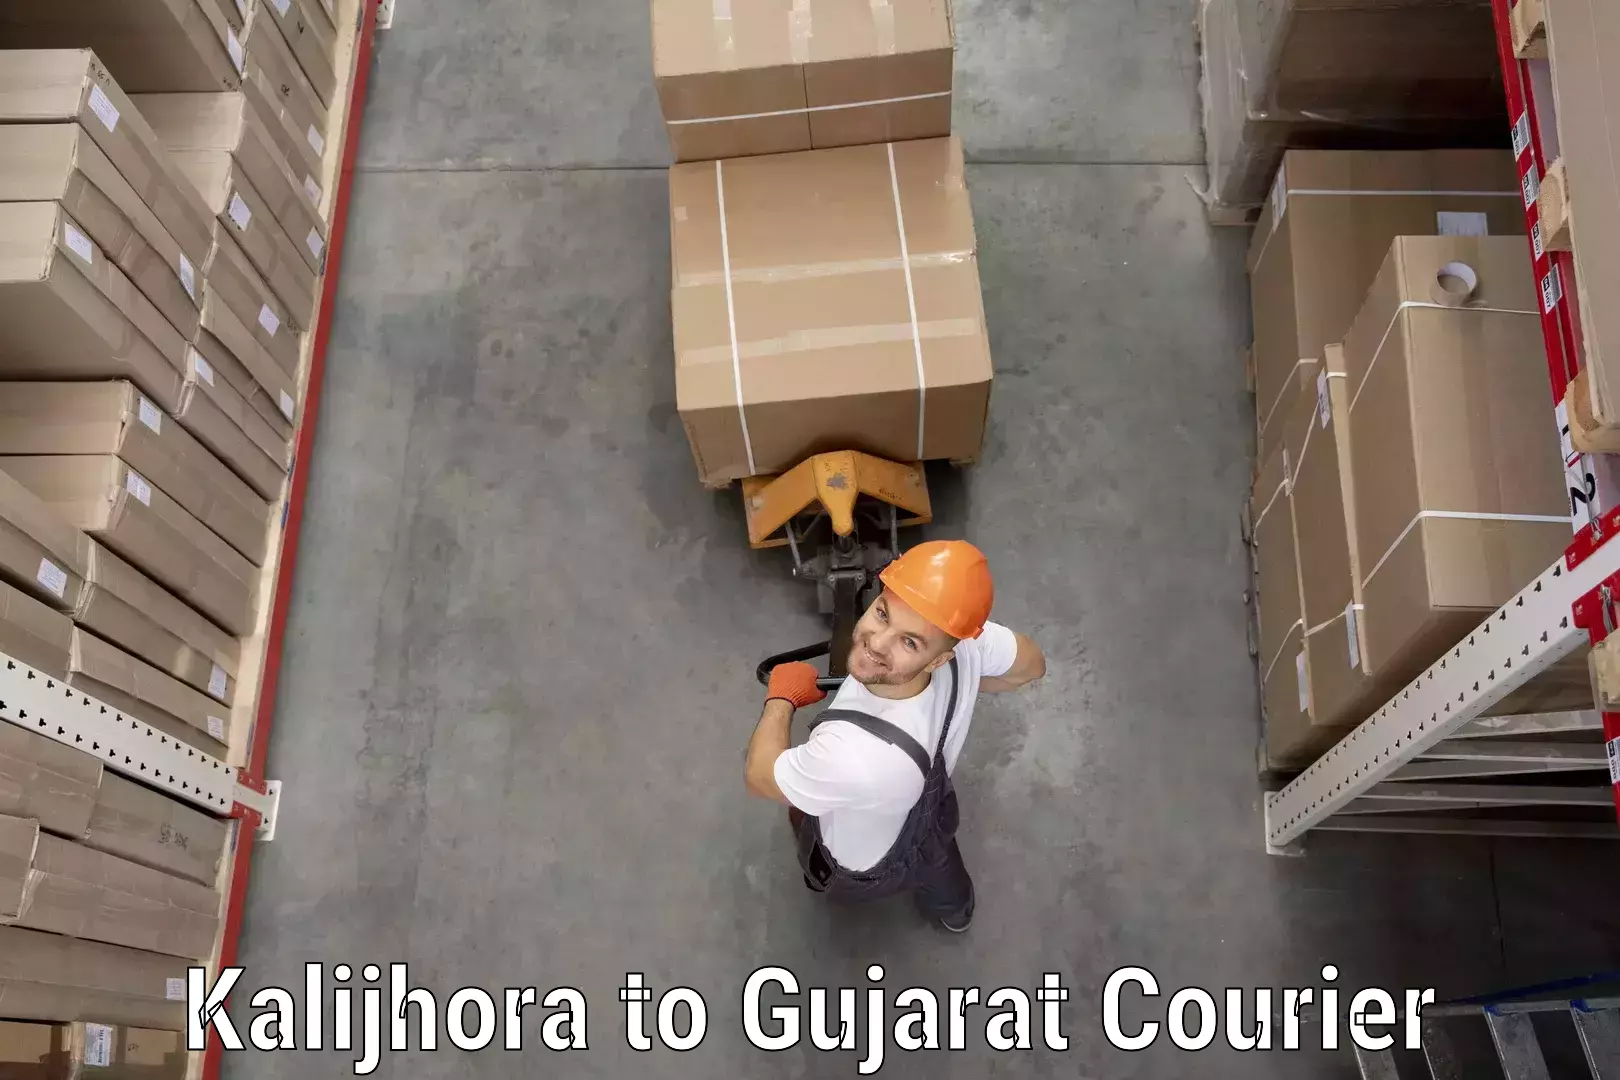 Seamless shipping experience in Kalijhora to Gujarat